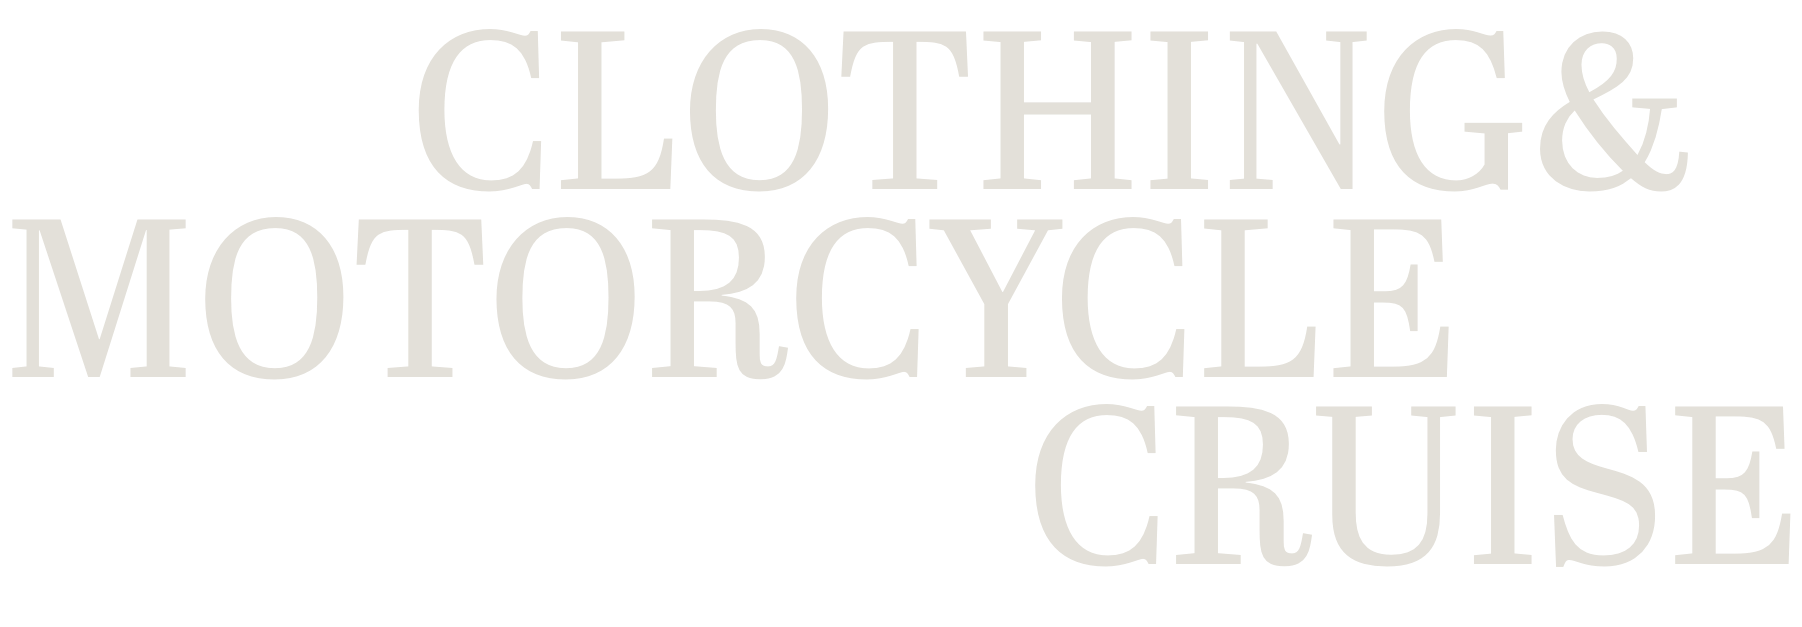 CLOTHING & MOTORCYCLE CRUISE